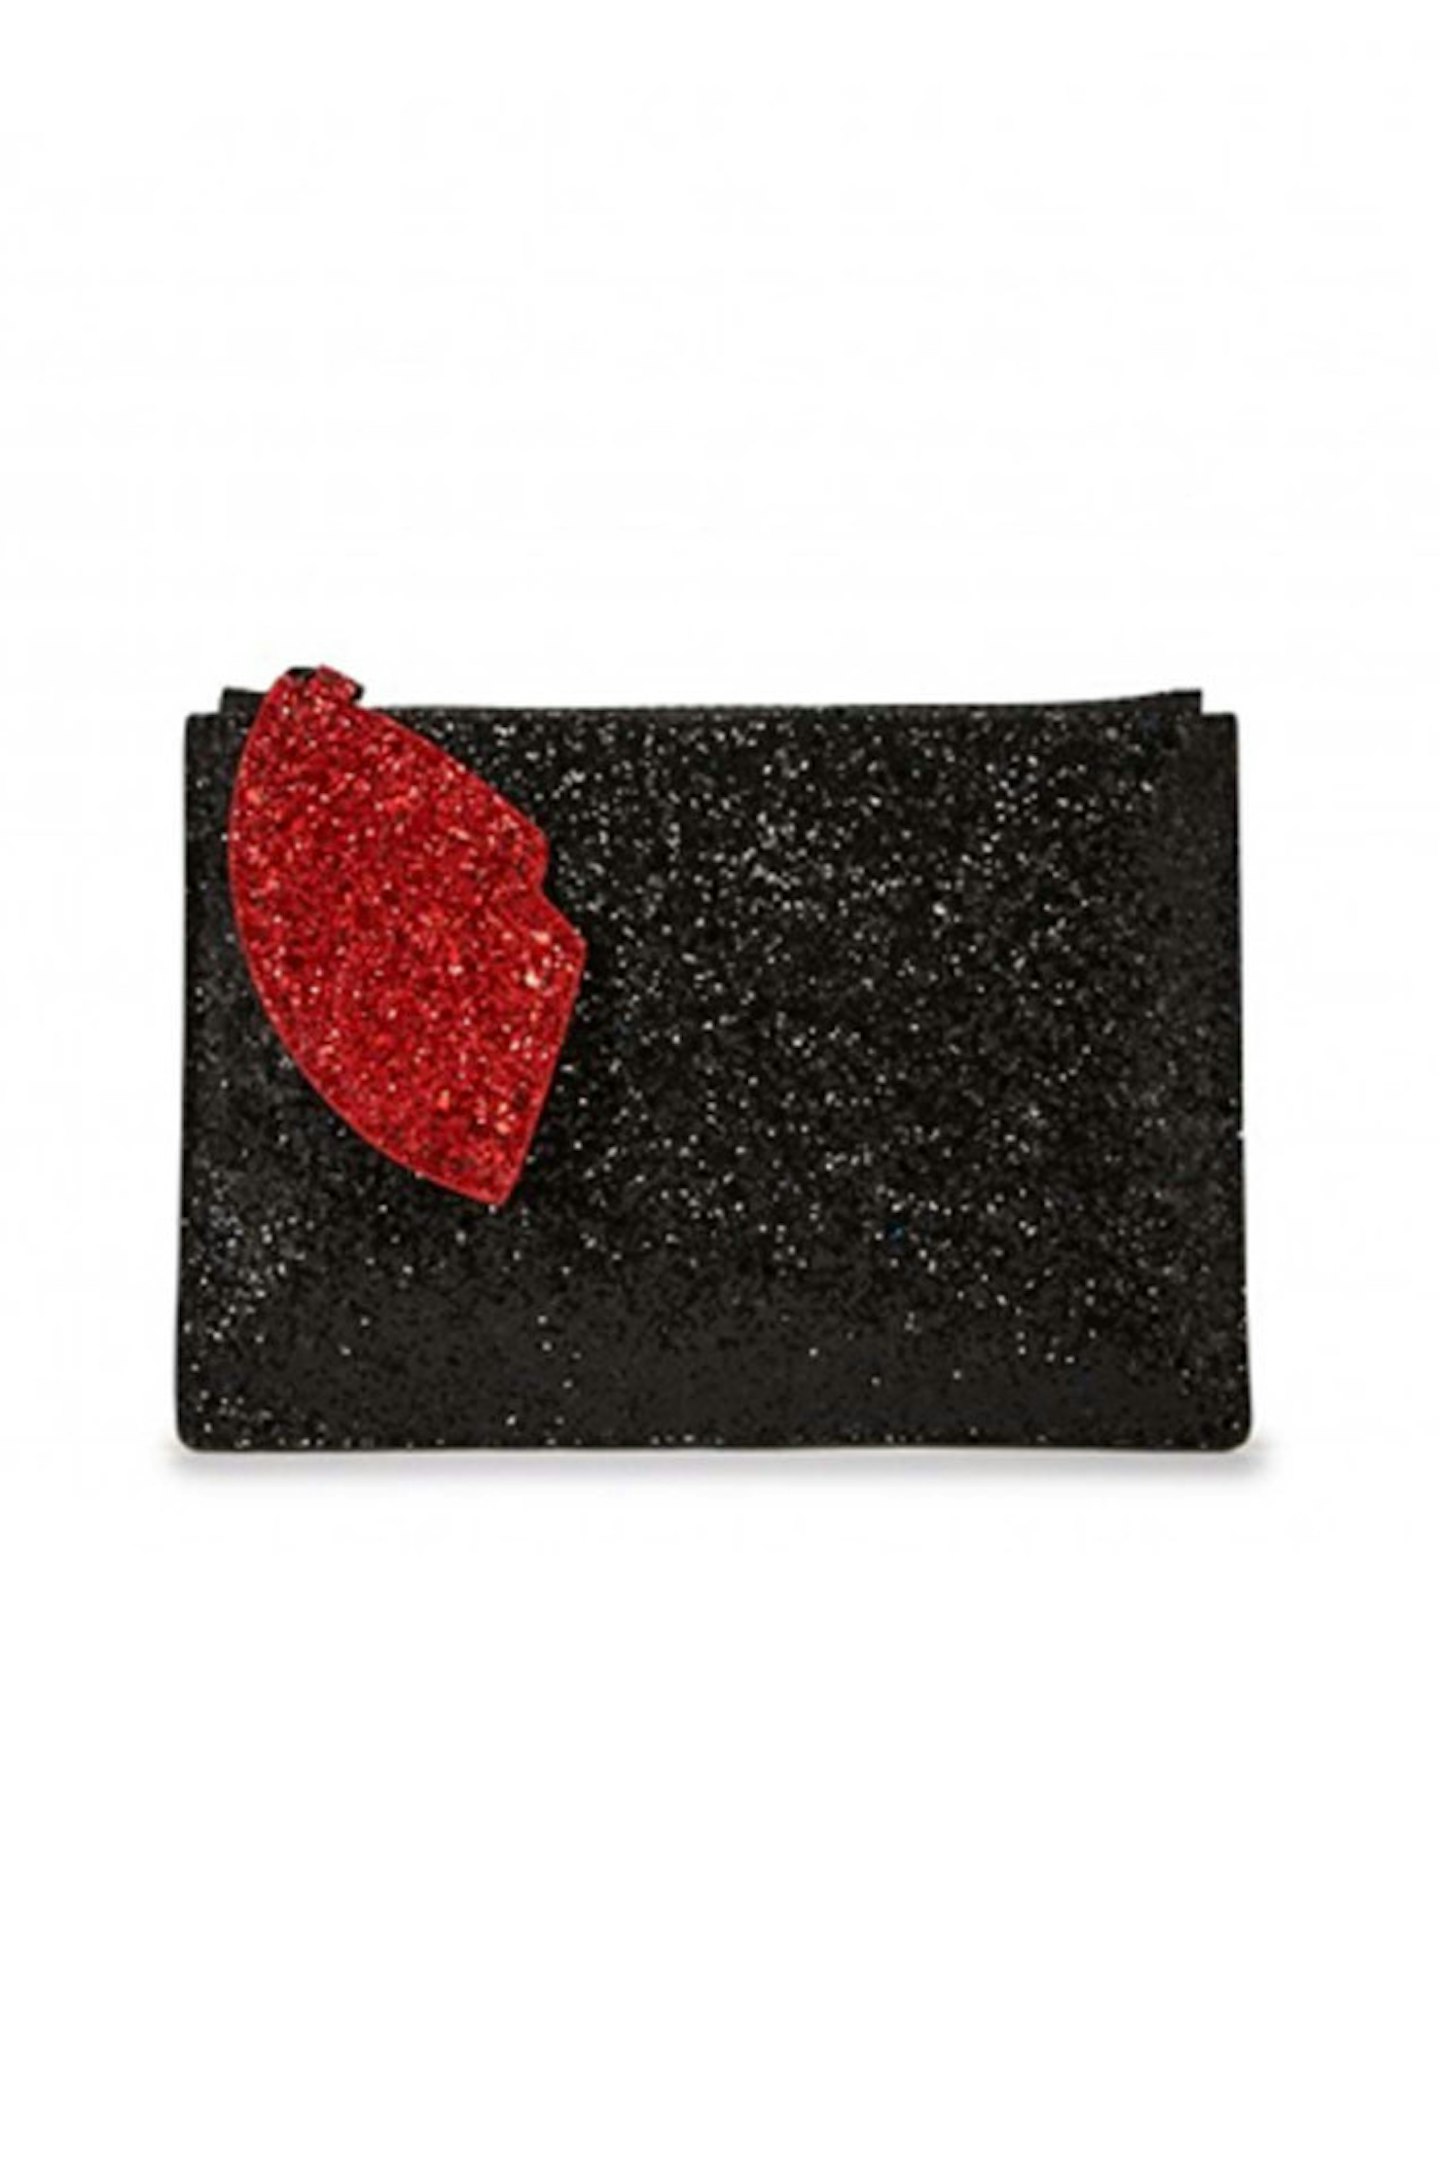 4. Black and red glitter clutch, £95, Lulu Guinness